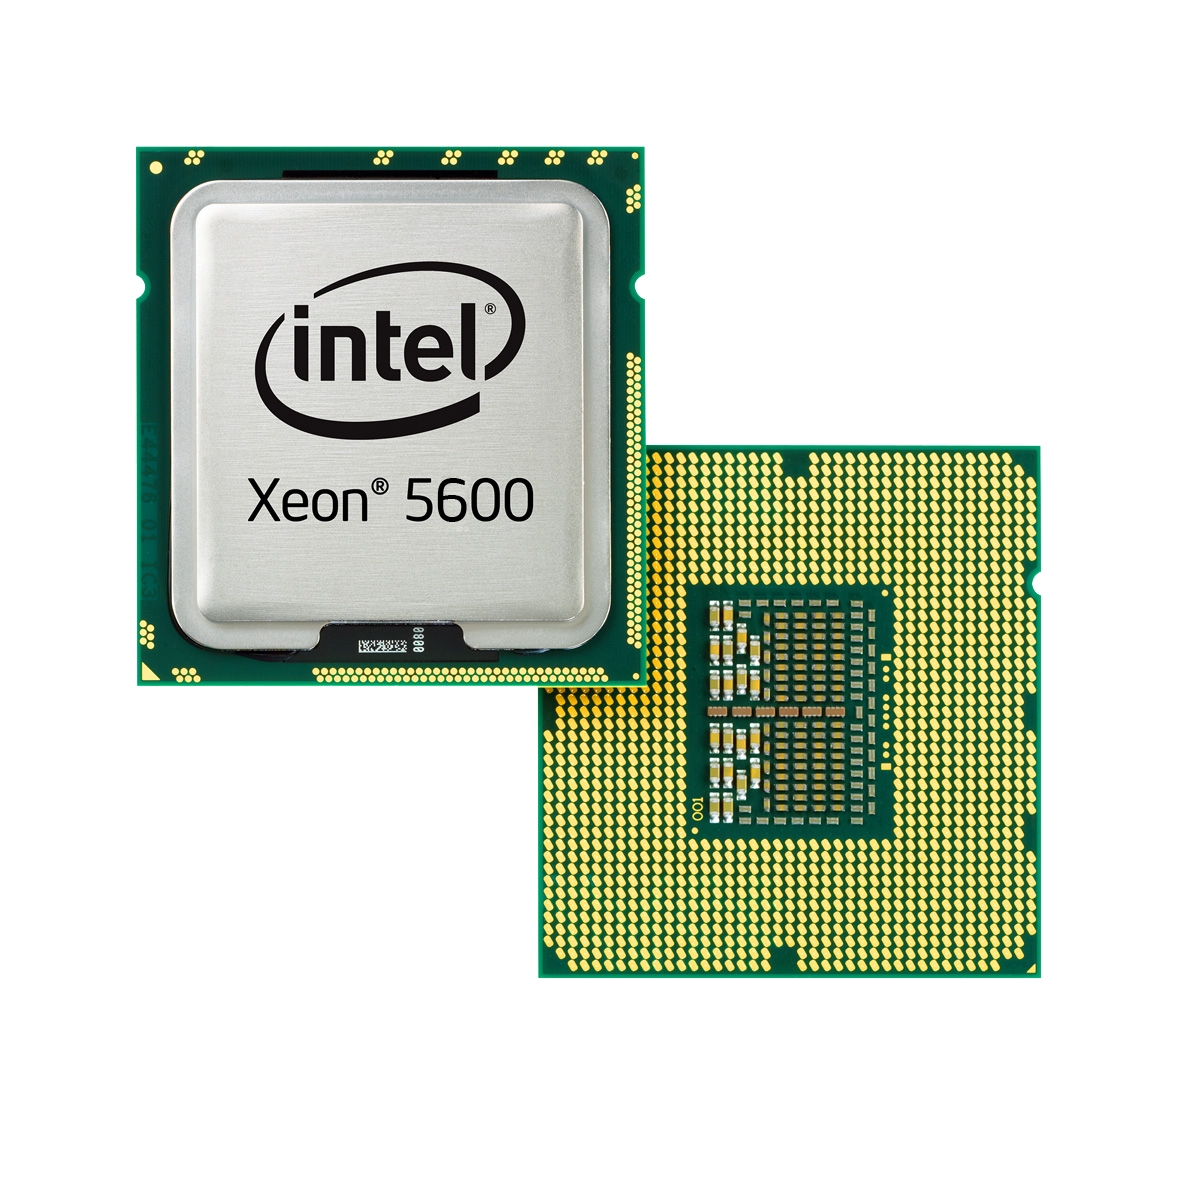 Immagine pubblicata in relazione al seguente contenuto: Intel lancia le cpu Xeon 5600 e Core i7-980X Extreme Edition | Nome immagine: news12729_1.jpg